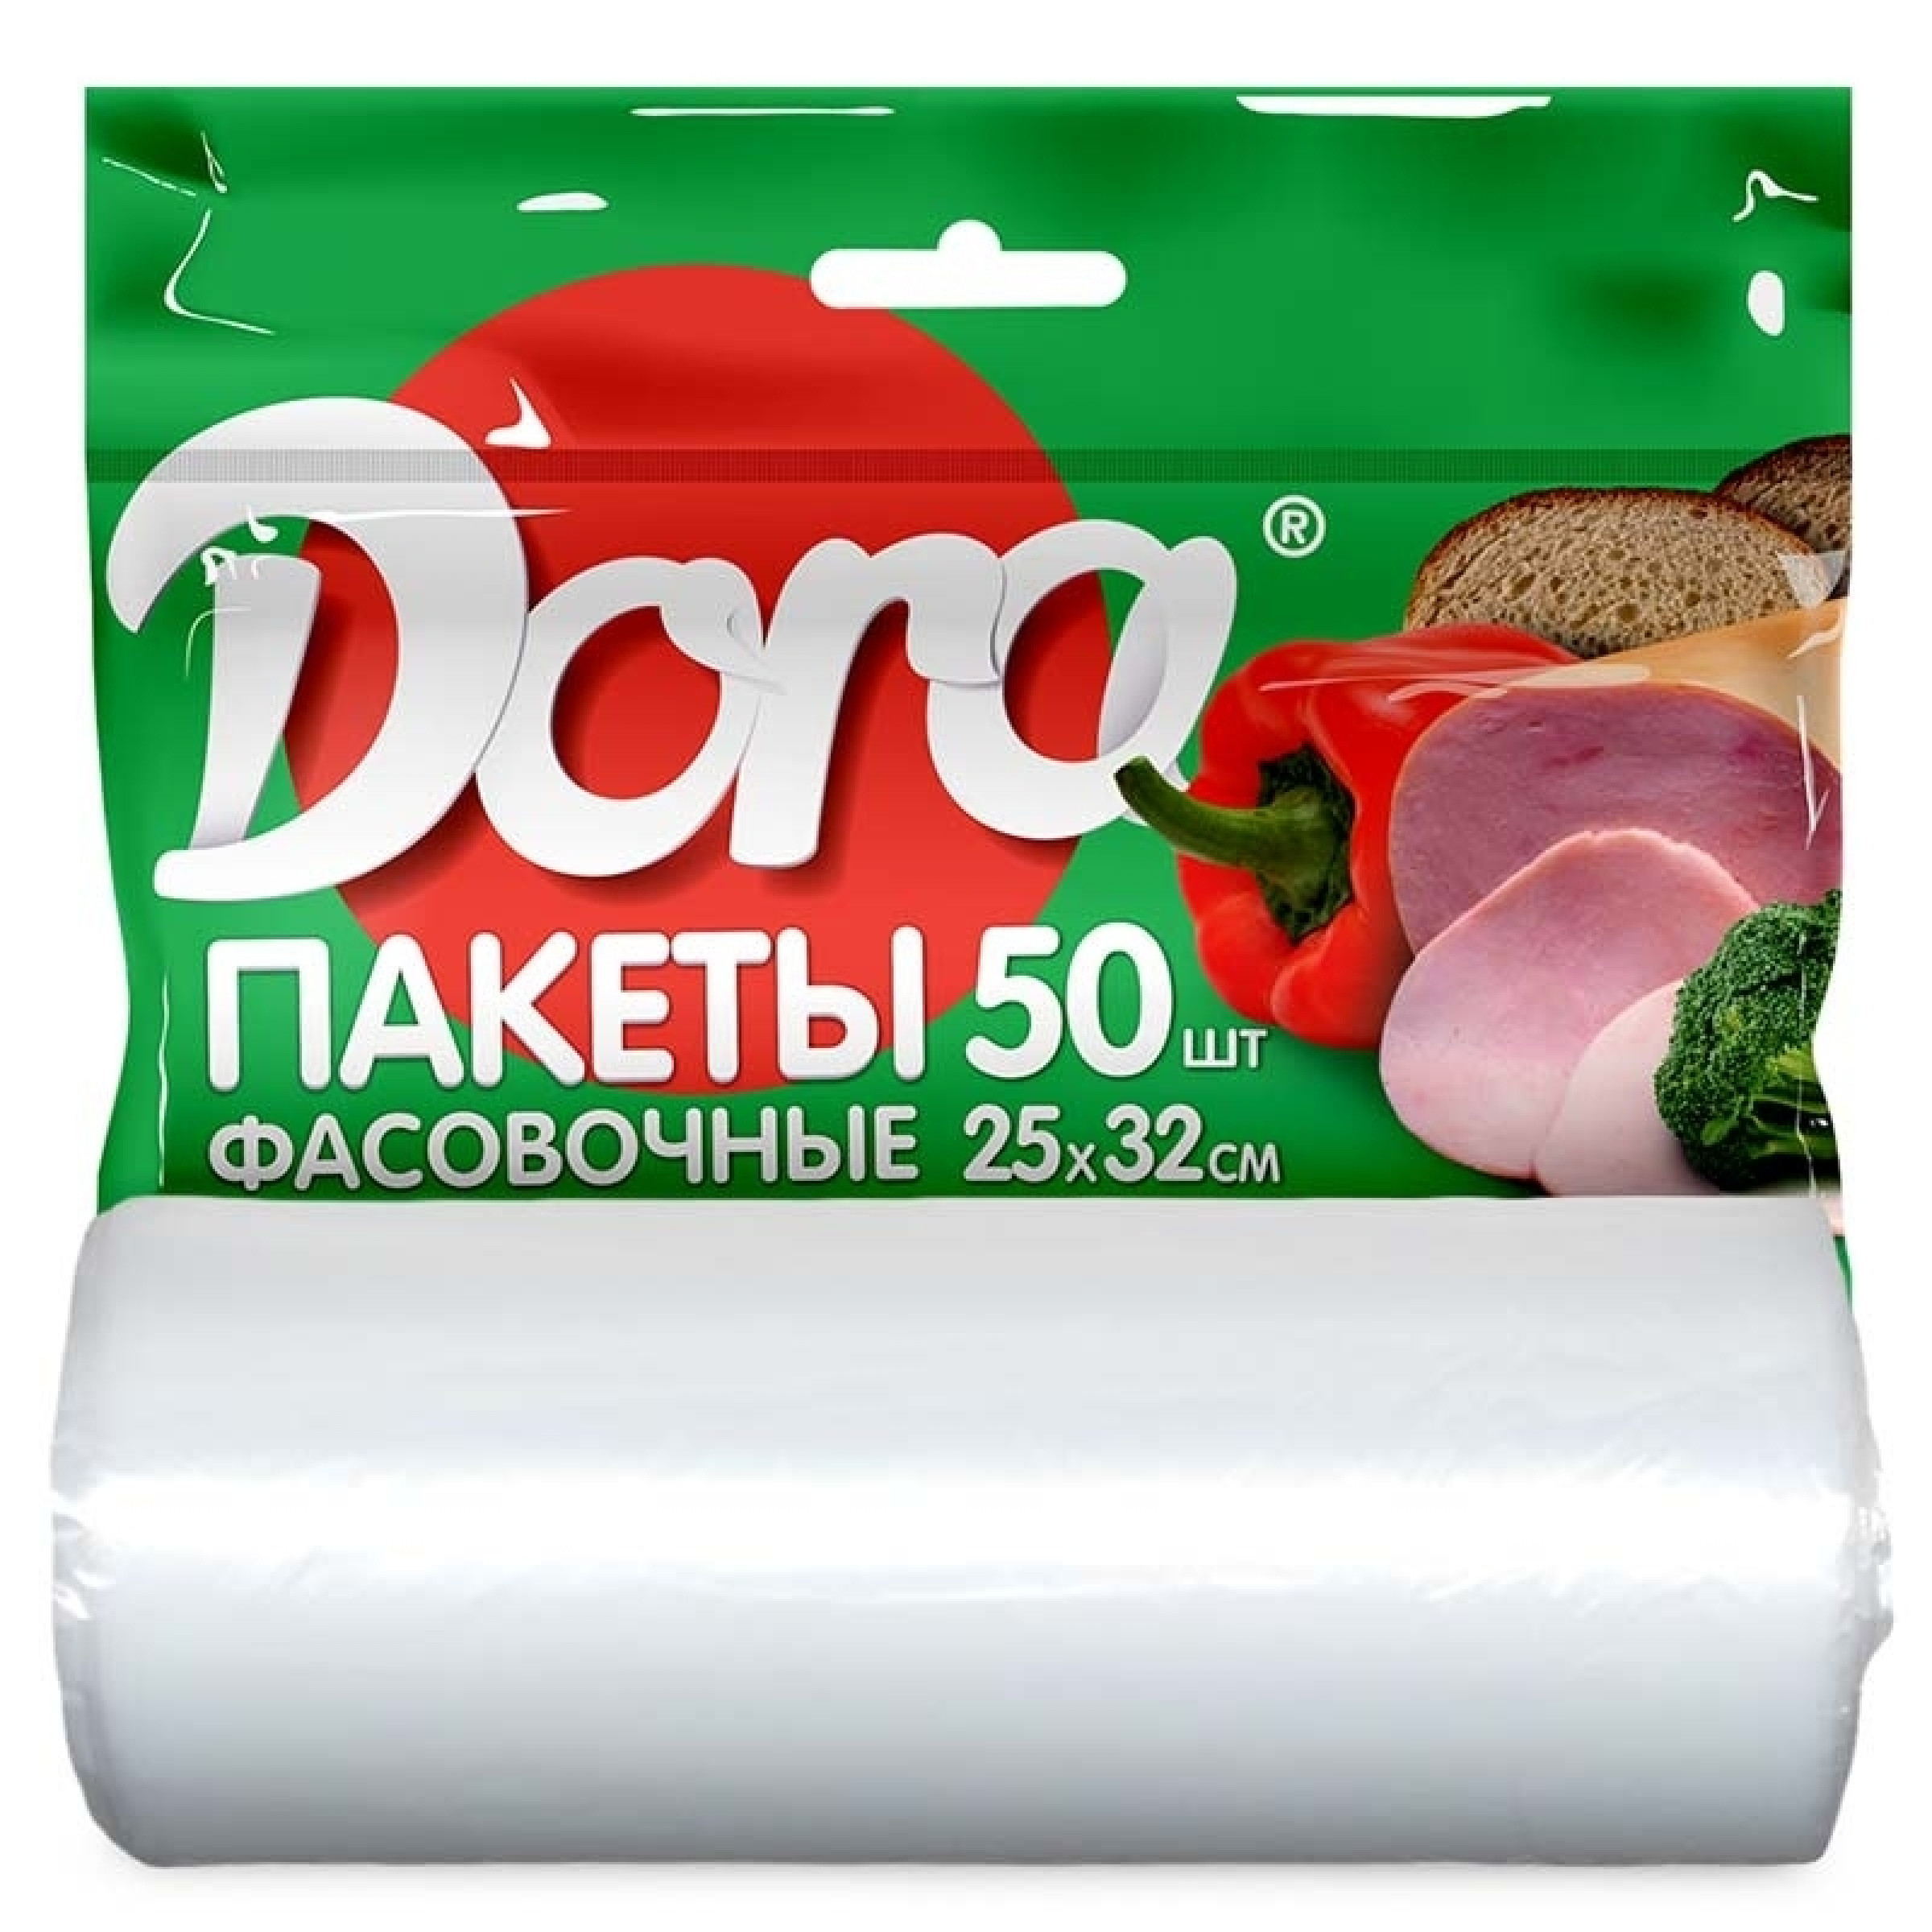 Пакет фасовочный Dora 25х32см, 50 шт